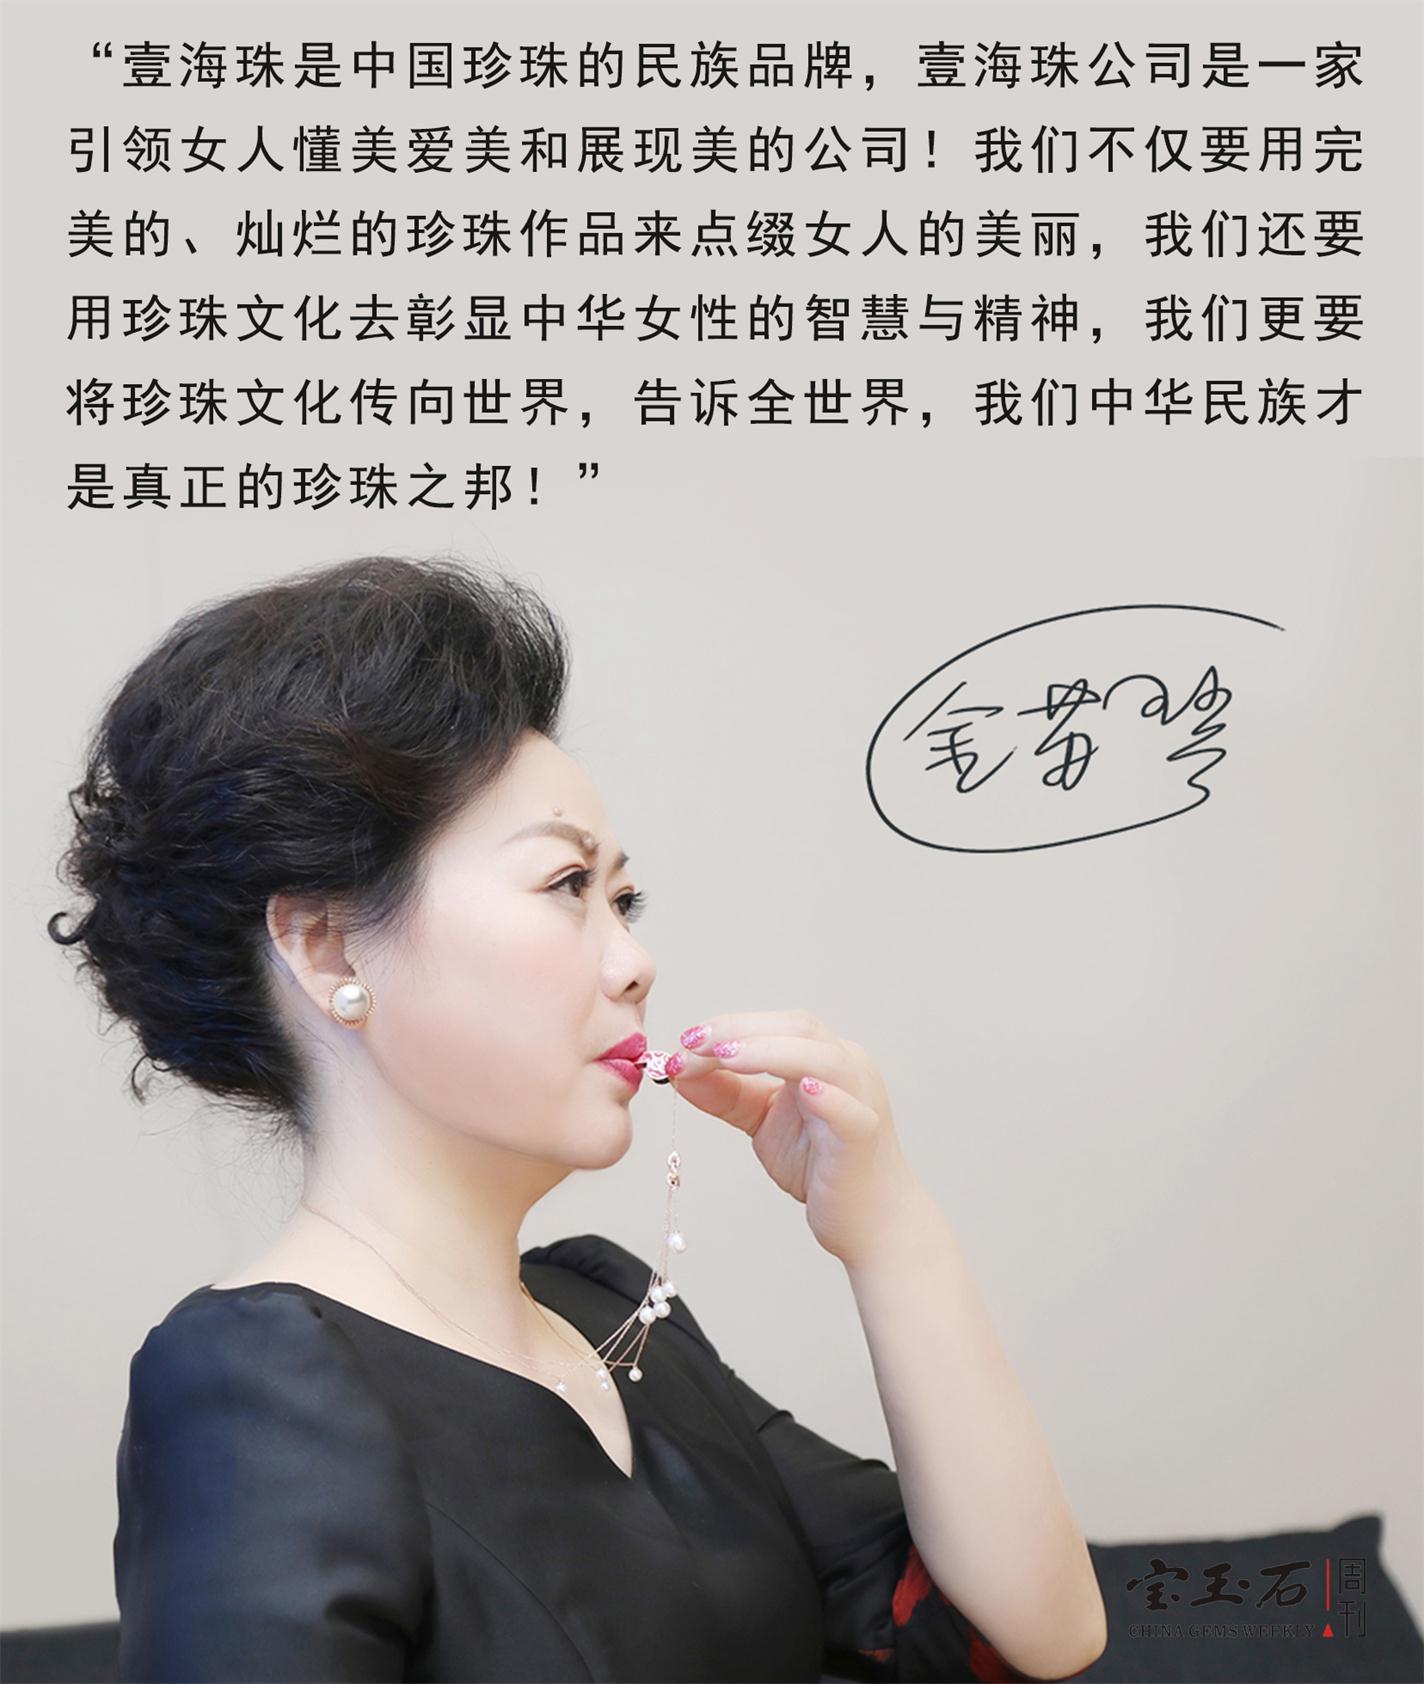 珍珠文化推广大使金苏琴在世界级珠宝刊物《PEARL REPORT》推广中国珍珠 金苏琴：将灵魂托付给珍珠的女人